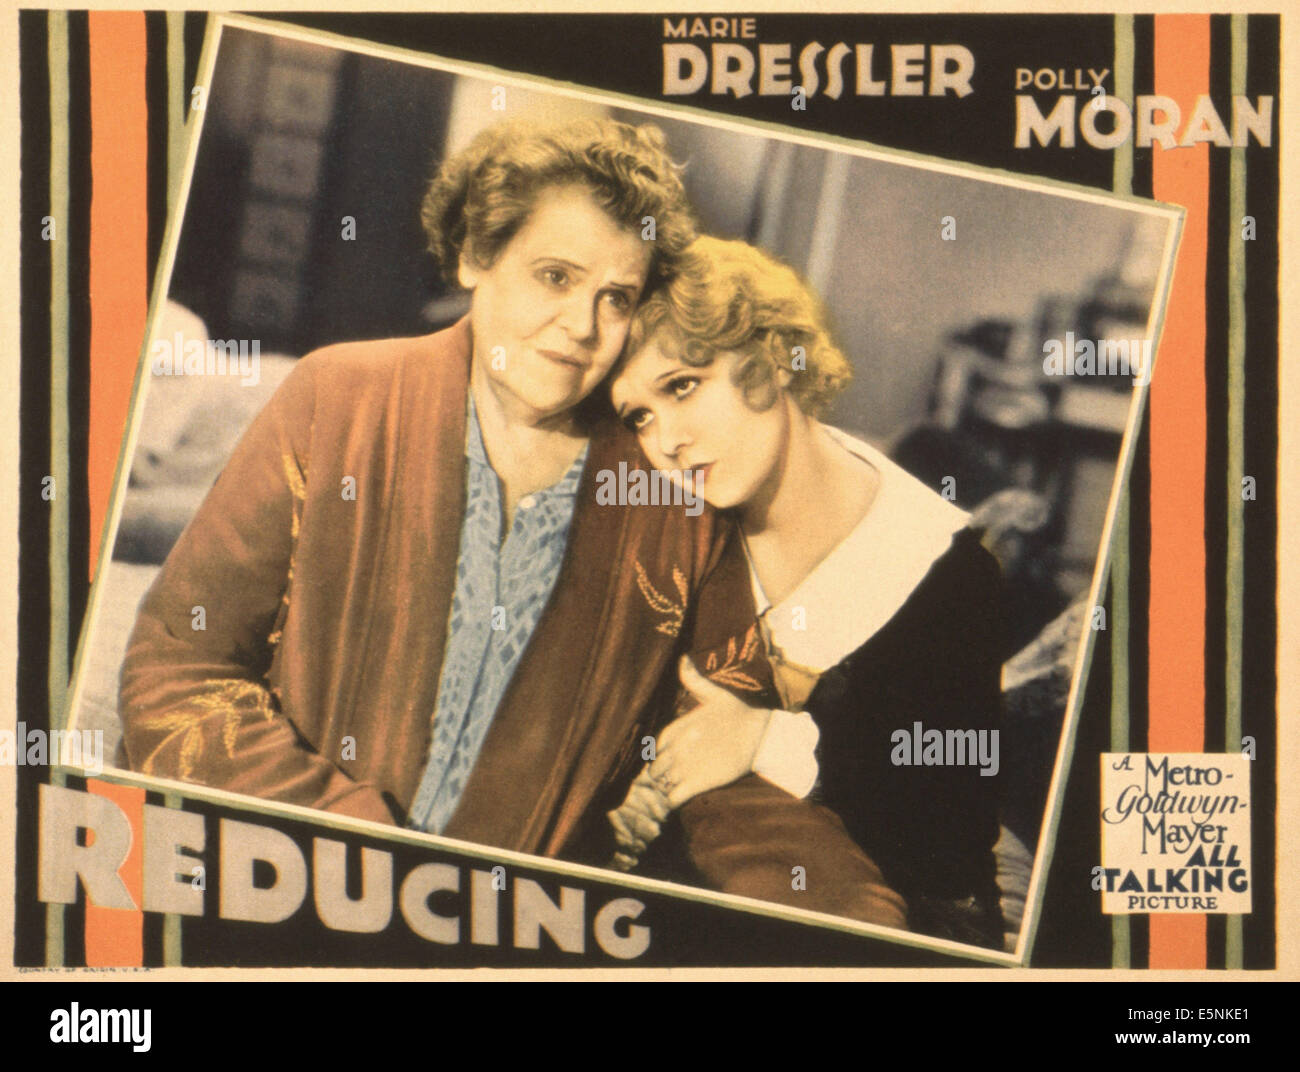 La réduction, lobbycard-nous, de gauche à droite : Marie Dressler, Anita Page, 1931 Banque D'Images